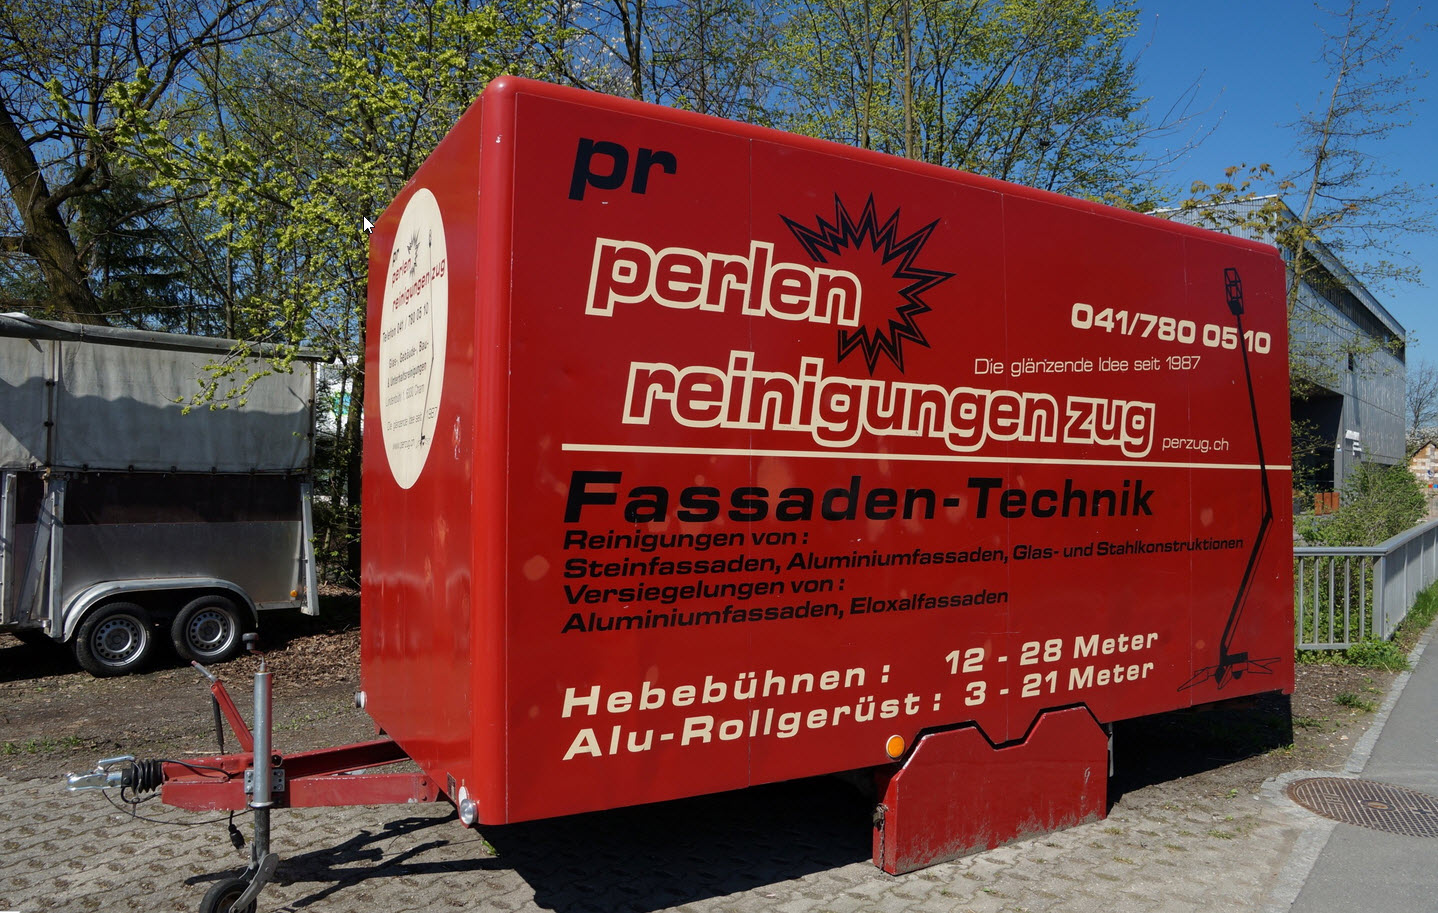 Bilder perlen reinigungen GmbH